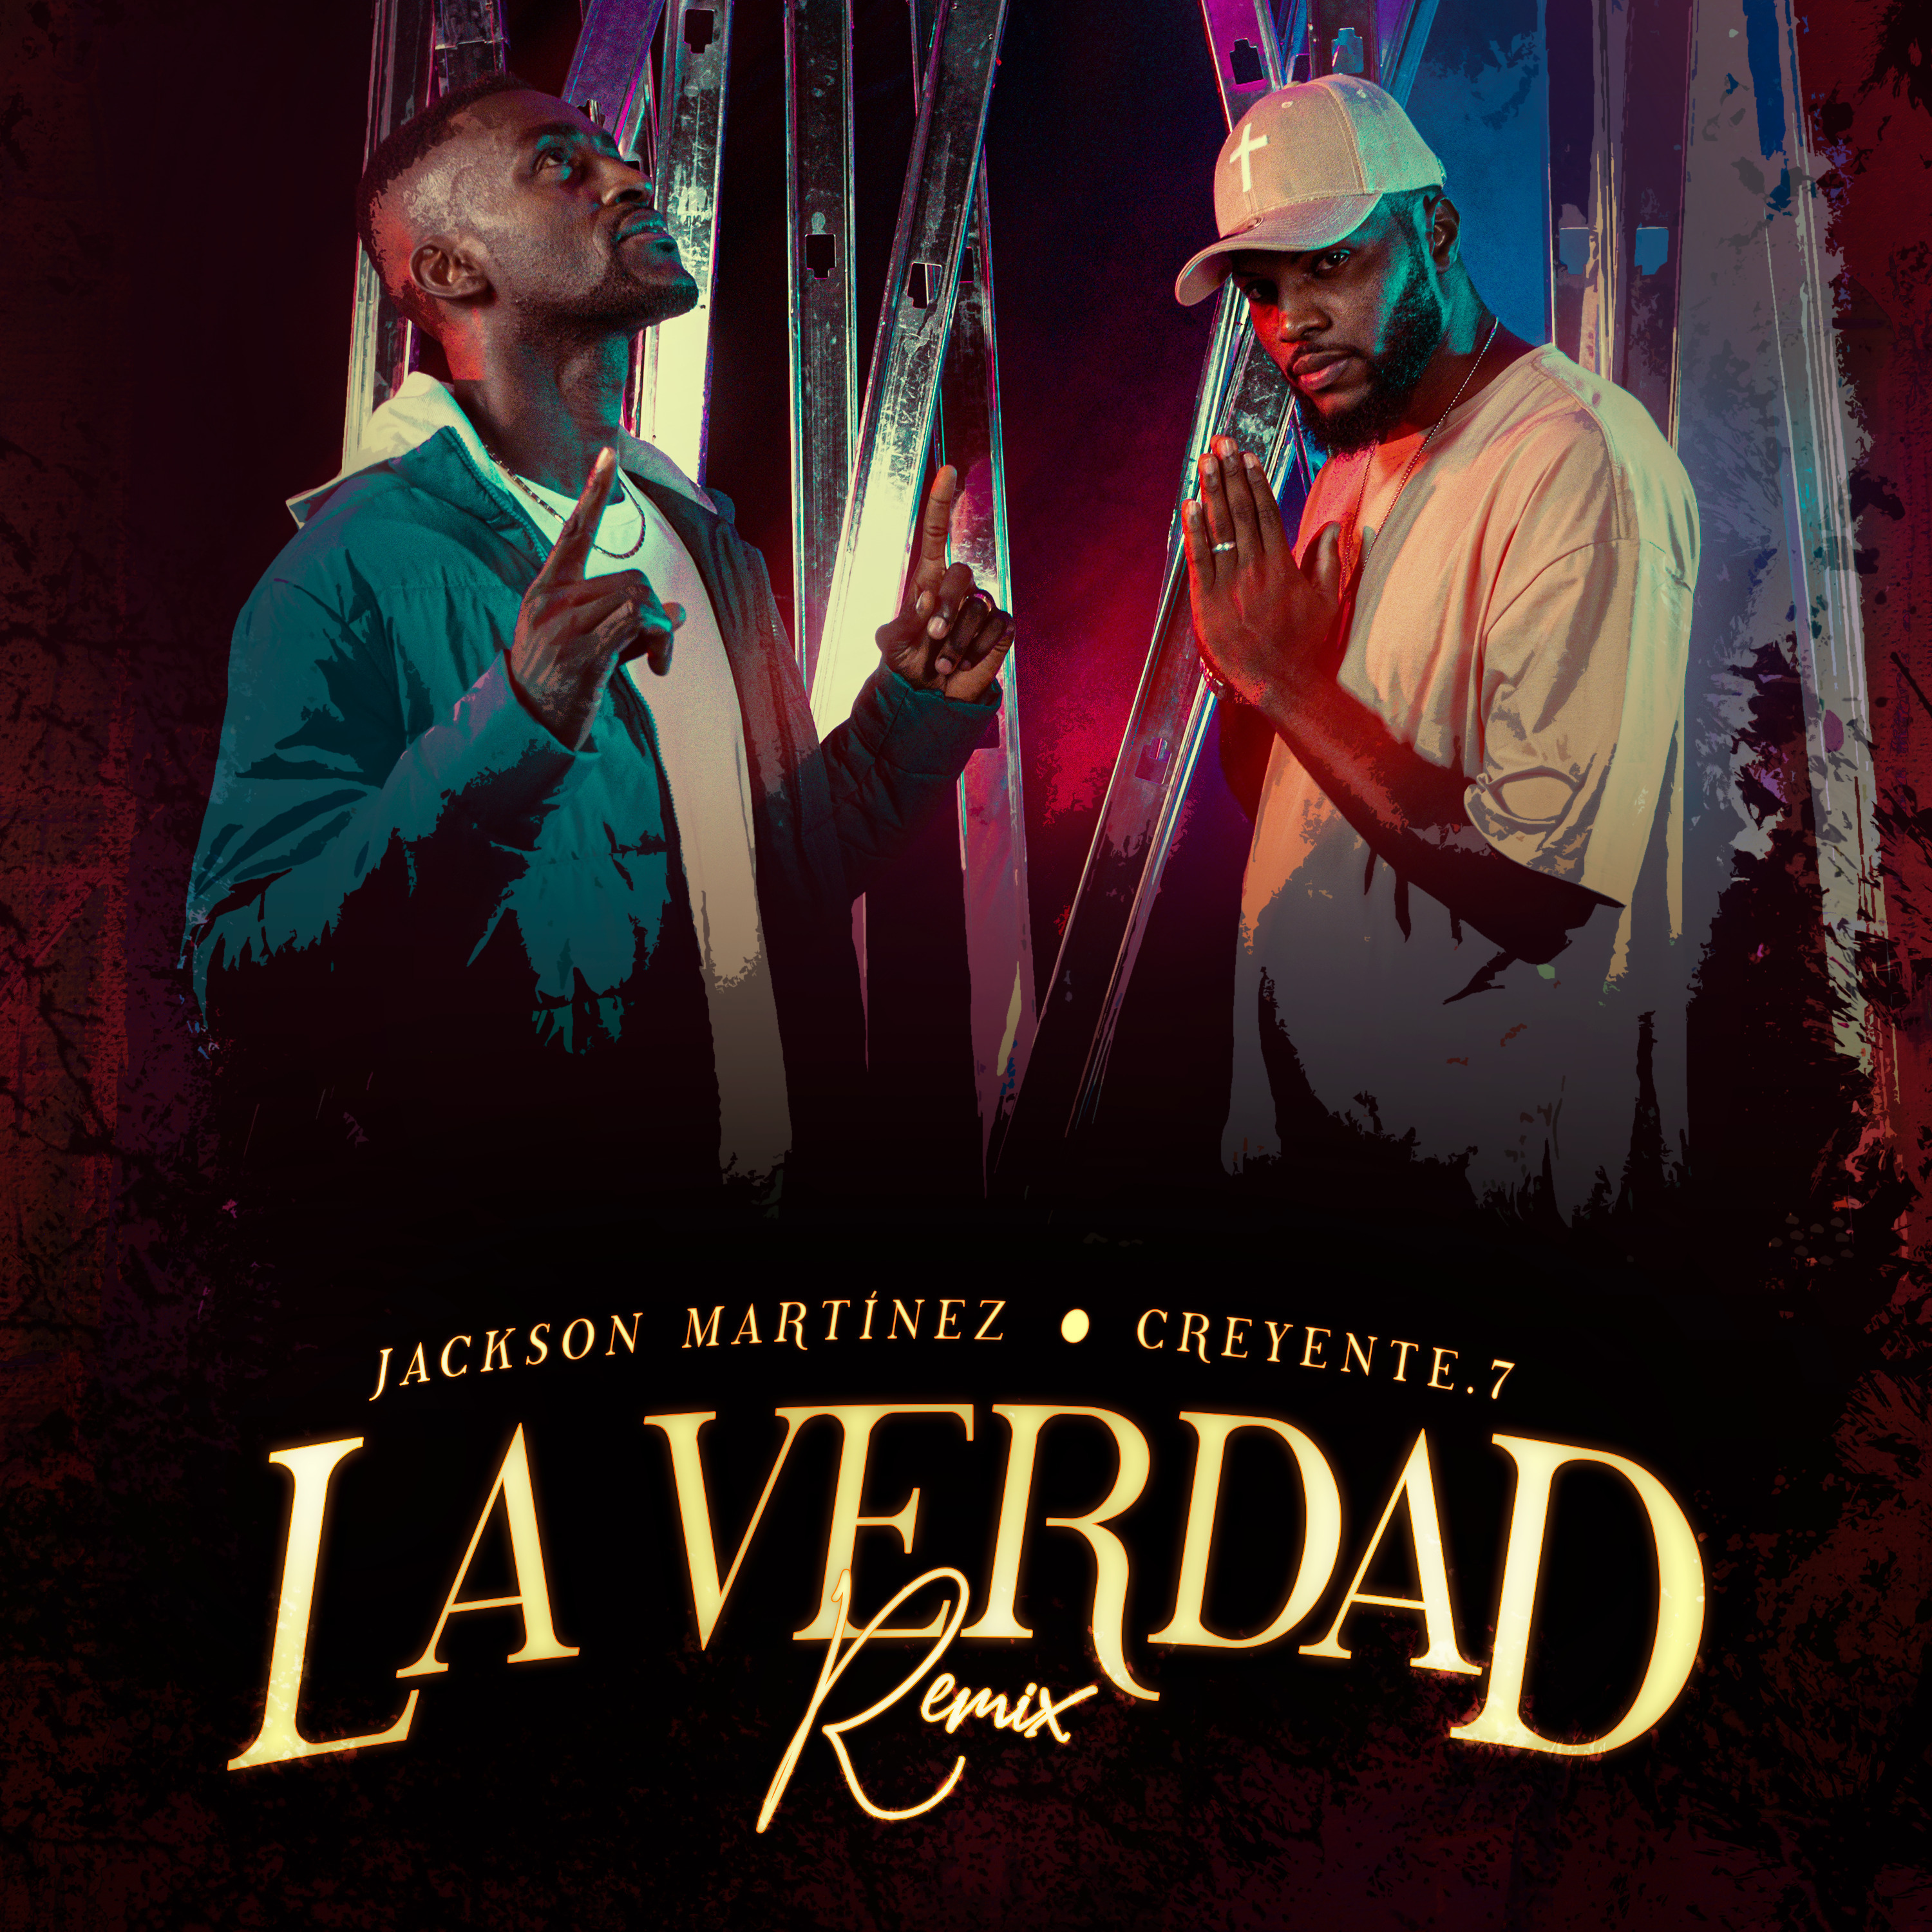 Jackson Martínez regresa con “La Verdad Remix” junto a Creyente.7